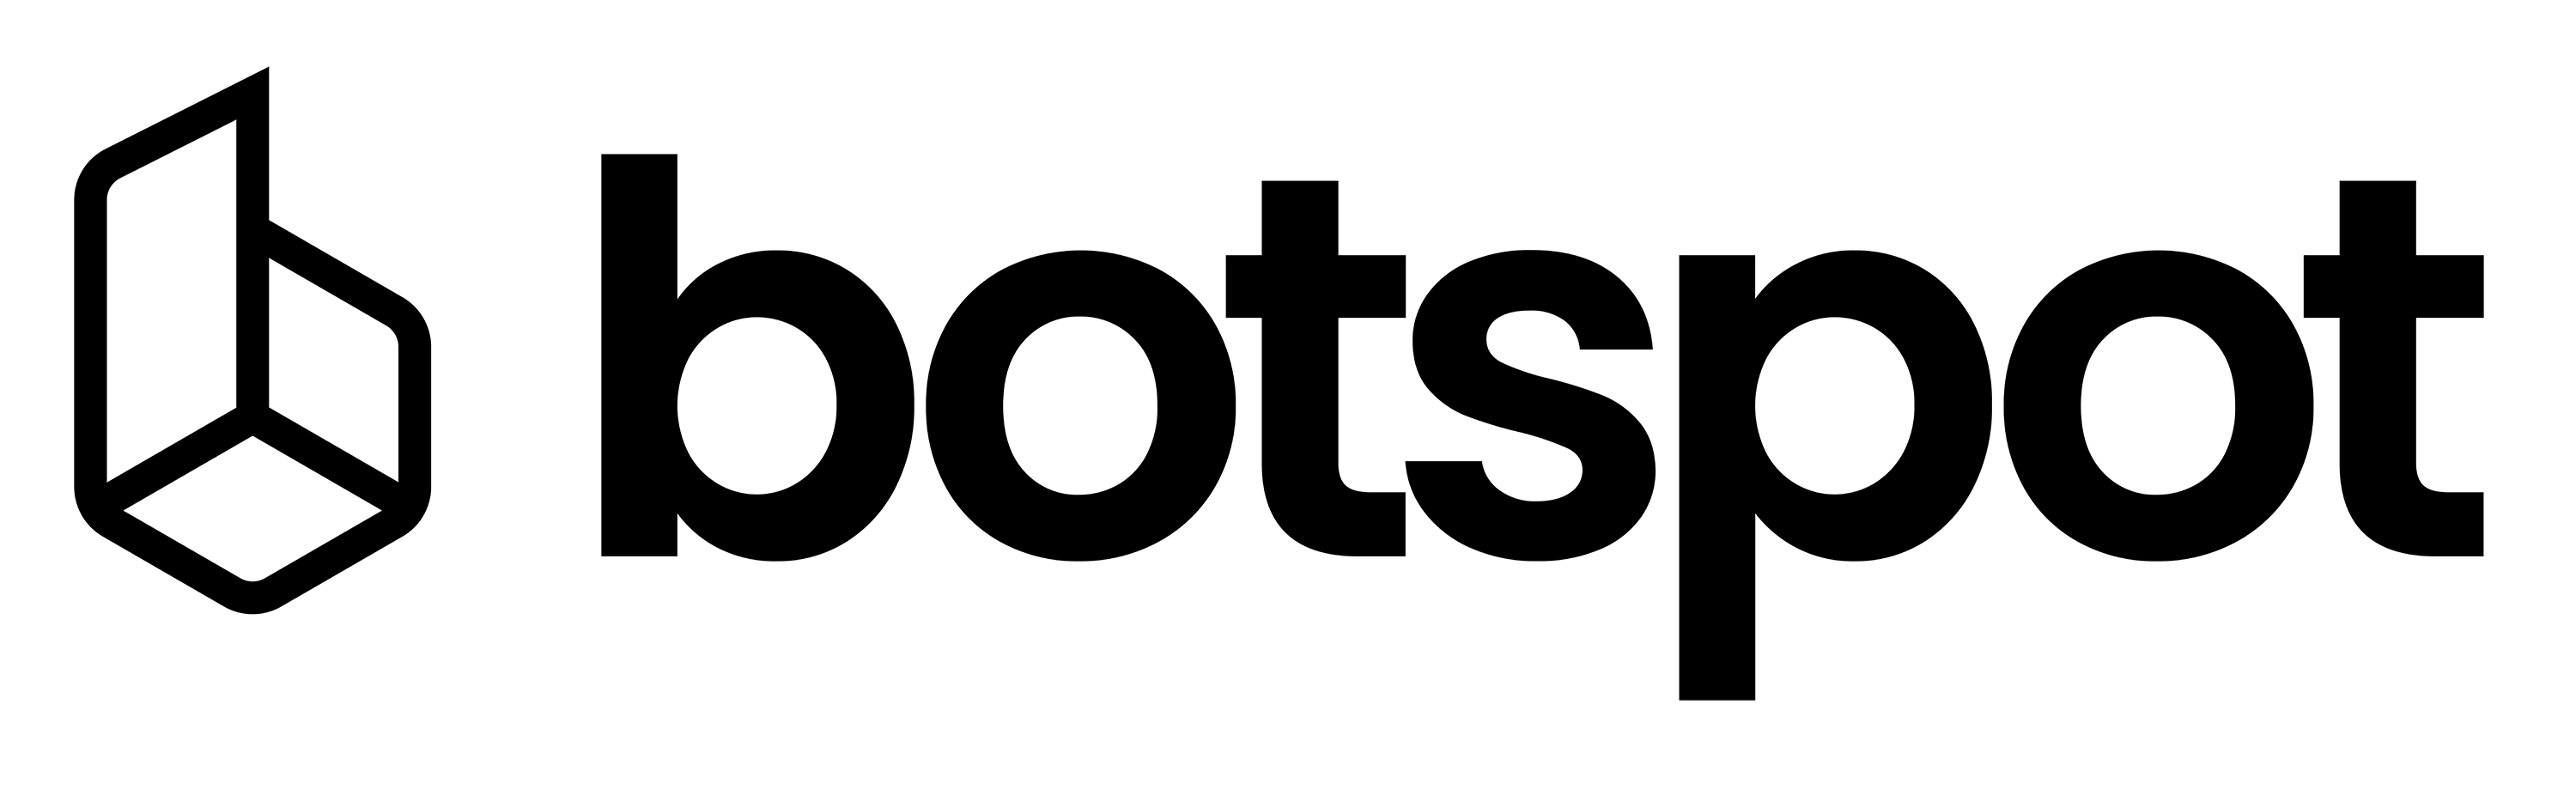 botspot logo